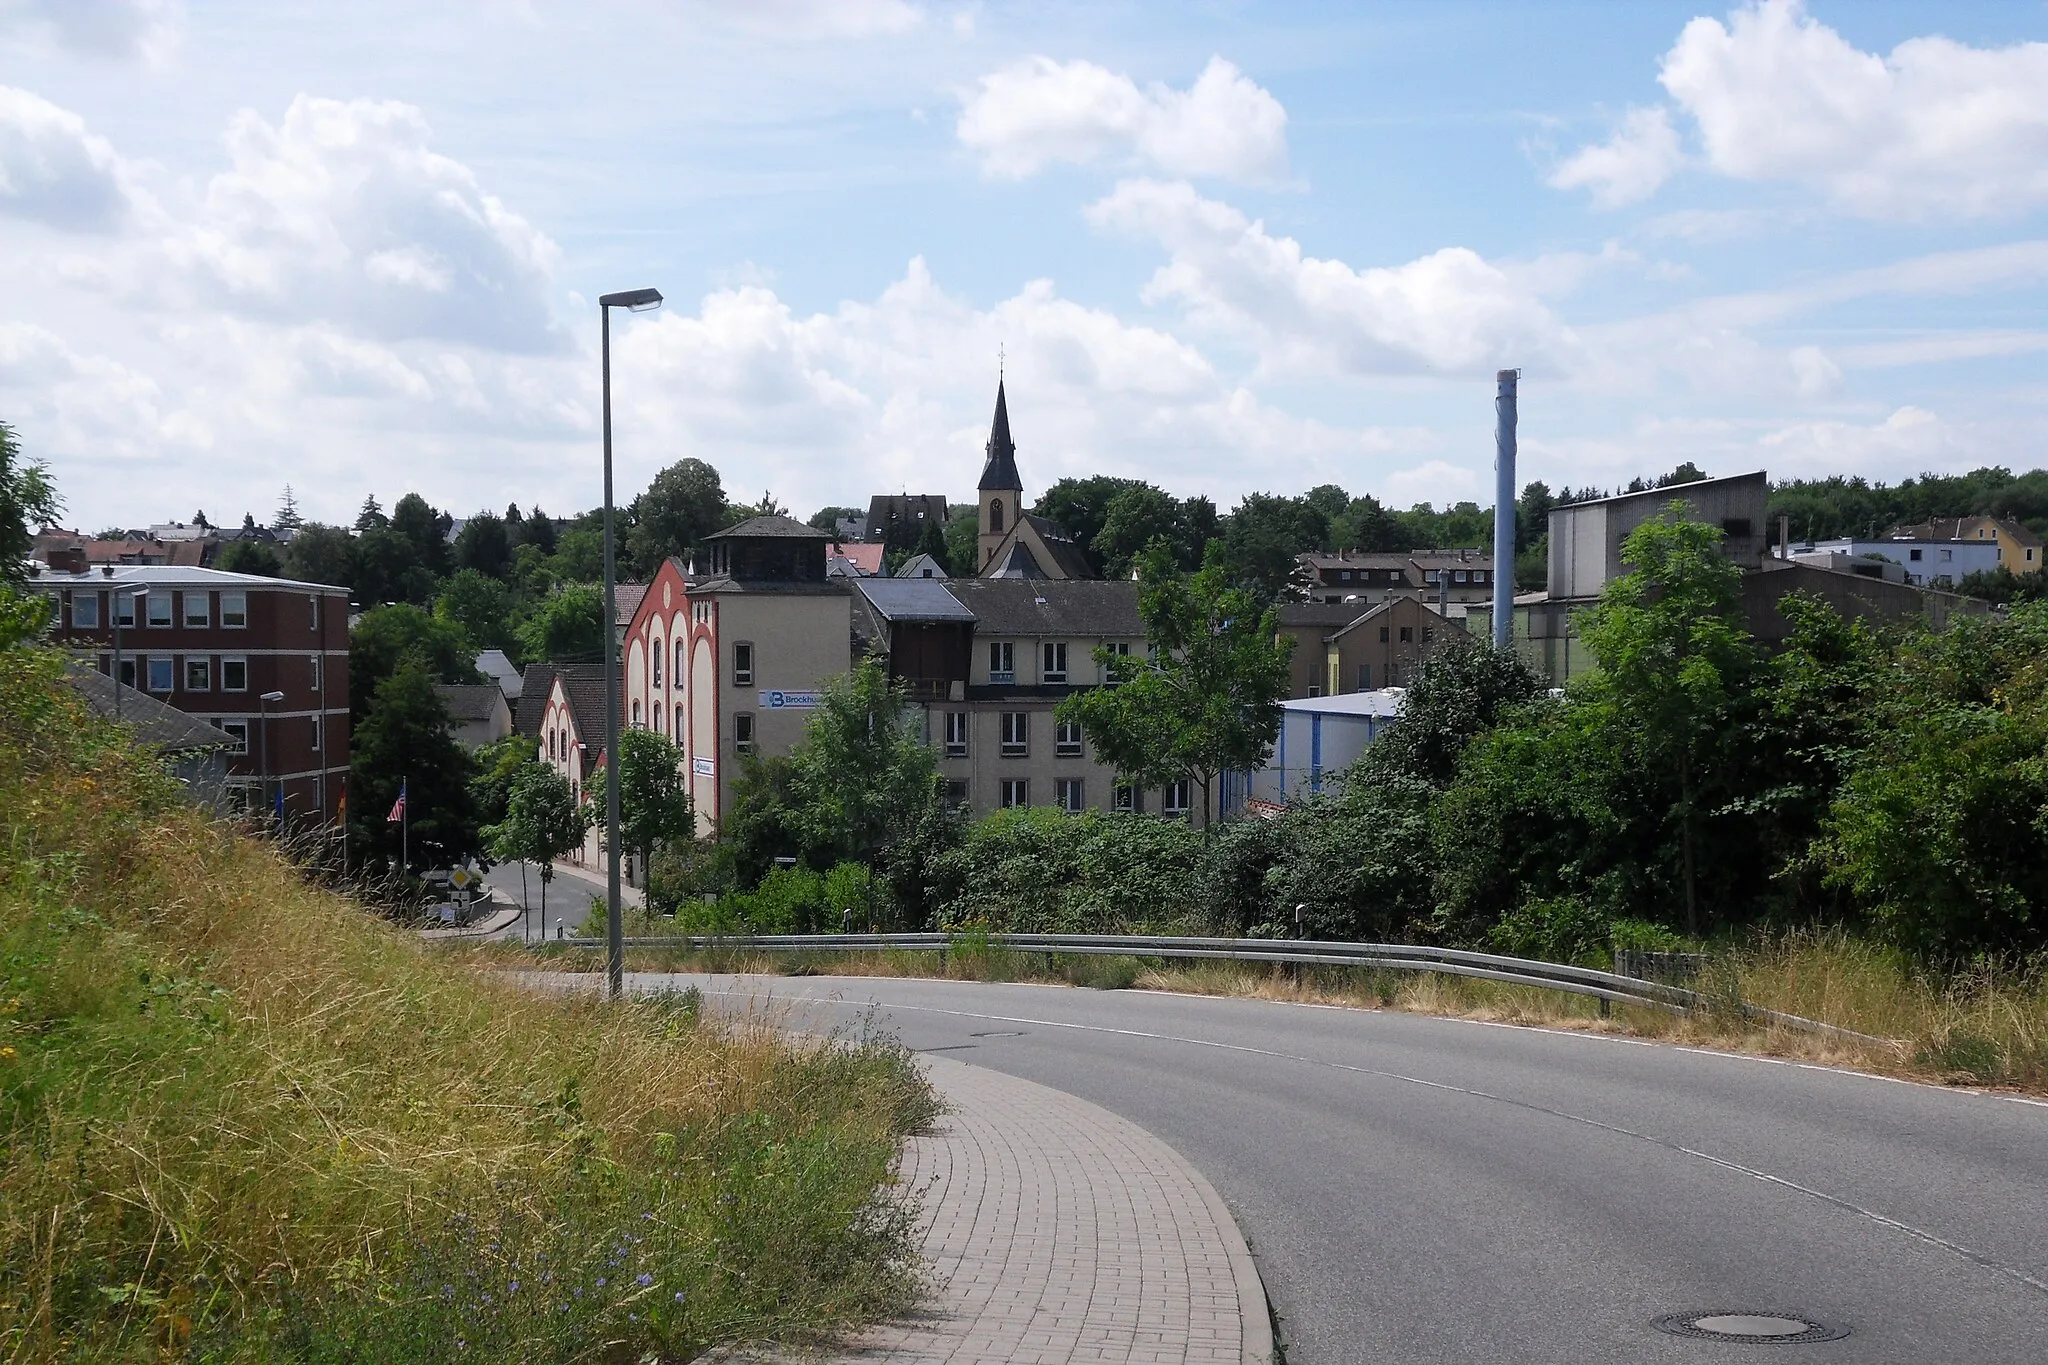 Photo showing: Blick auf Oberwalluf mit der Firma Brockhues und der Pfarrkirche St. Martin, gesehen vom Schachweg, der Verbindung zwischen der Bundesstraße 260 und dem Ort aus Richtung Nordosten